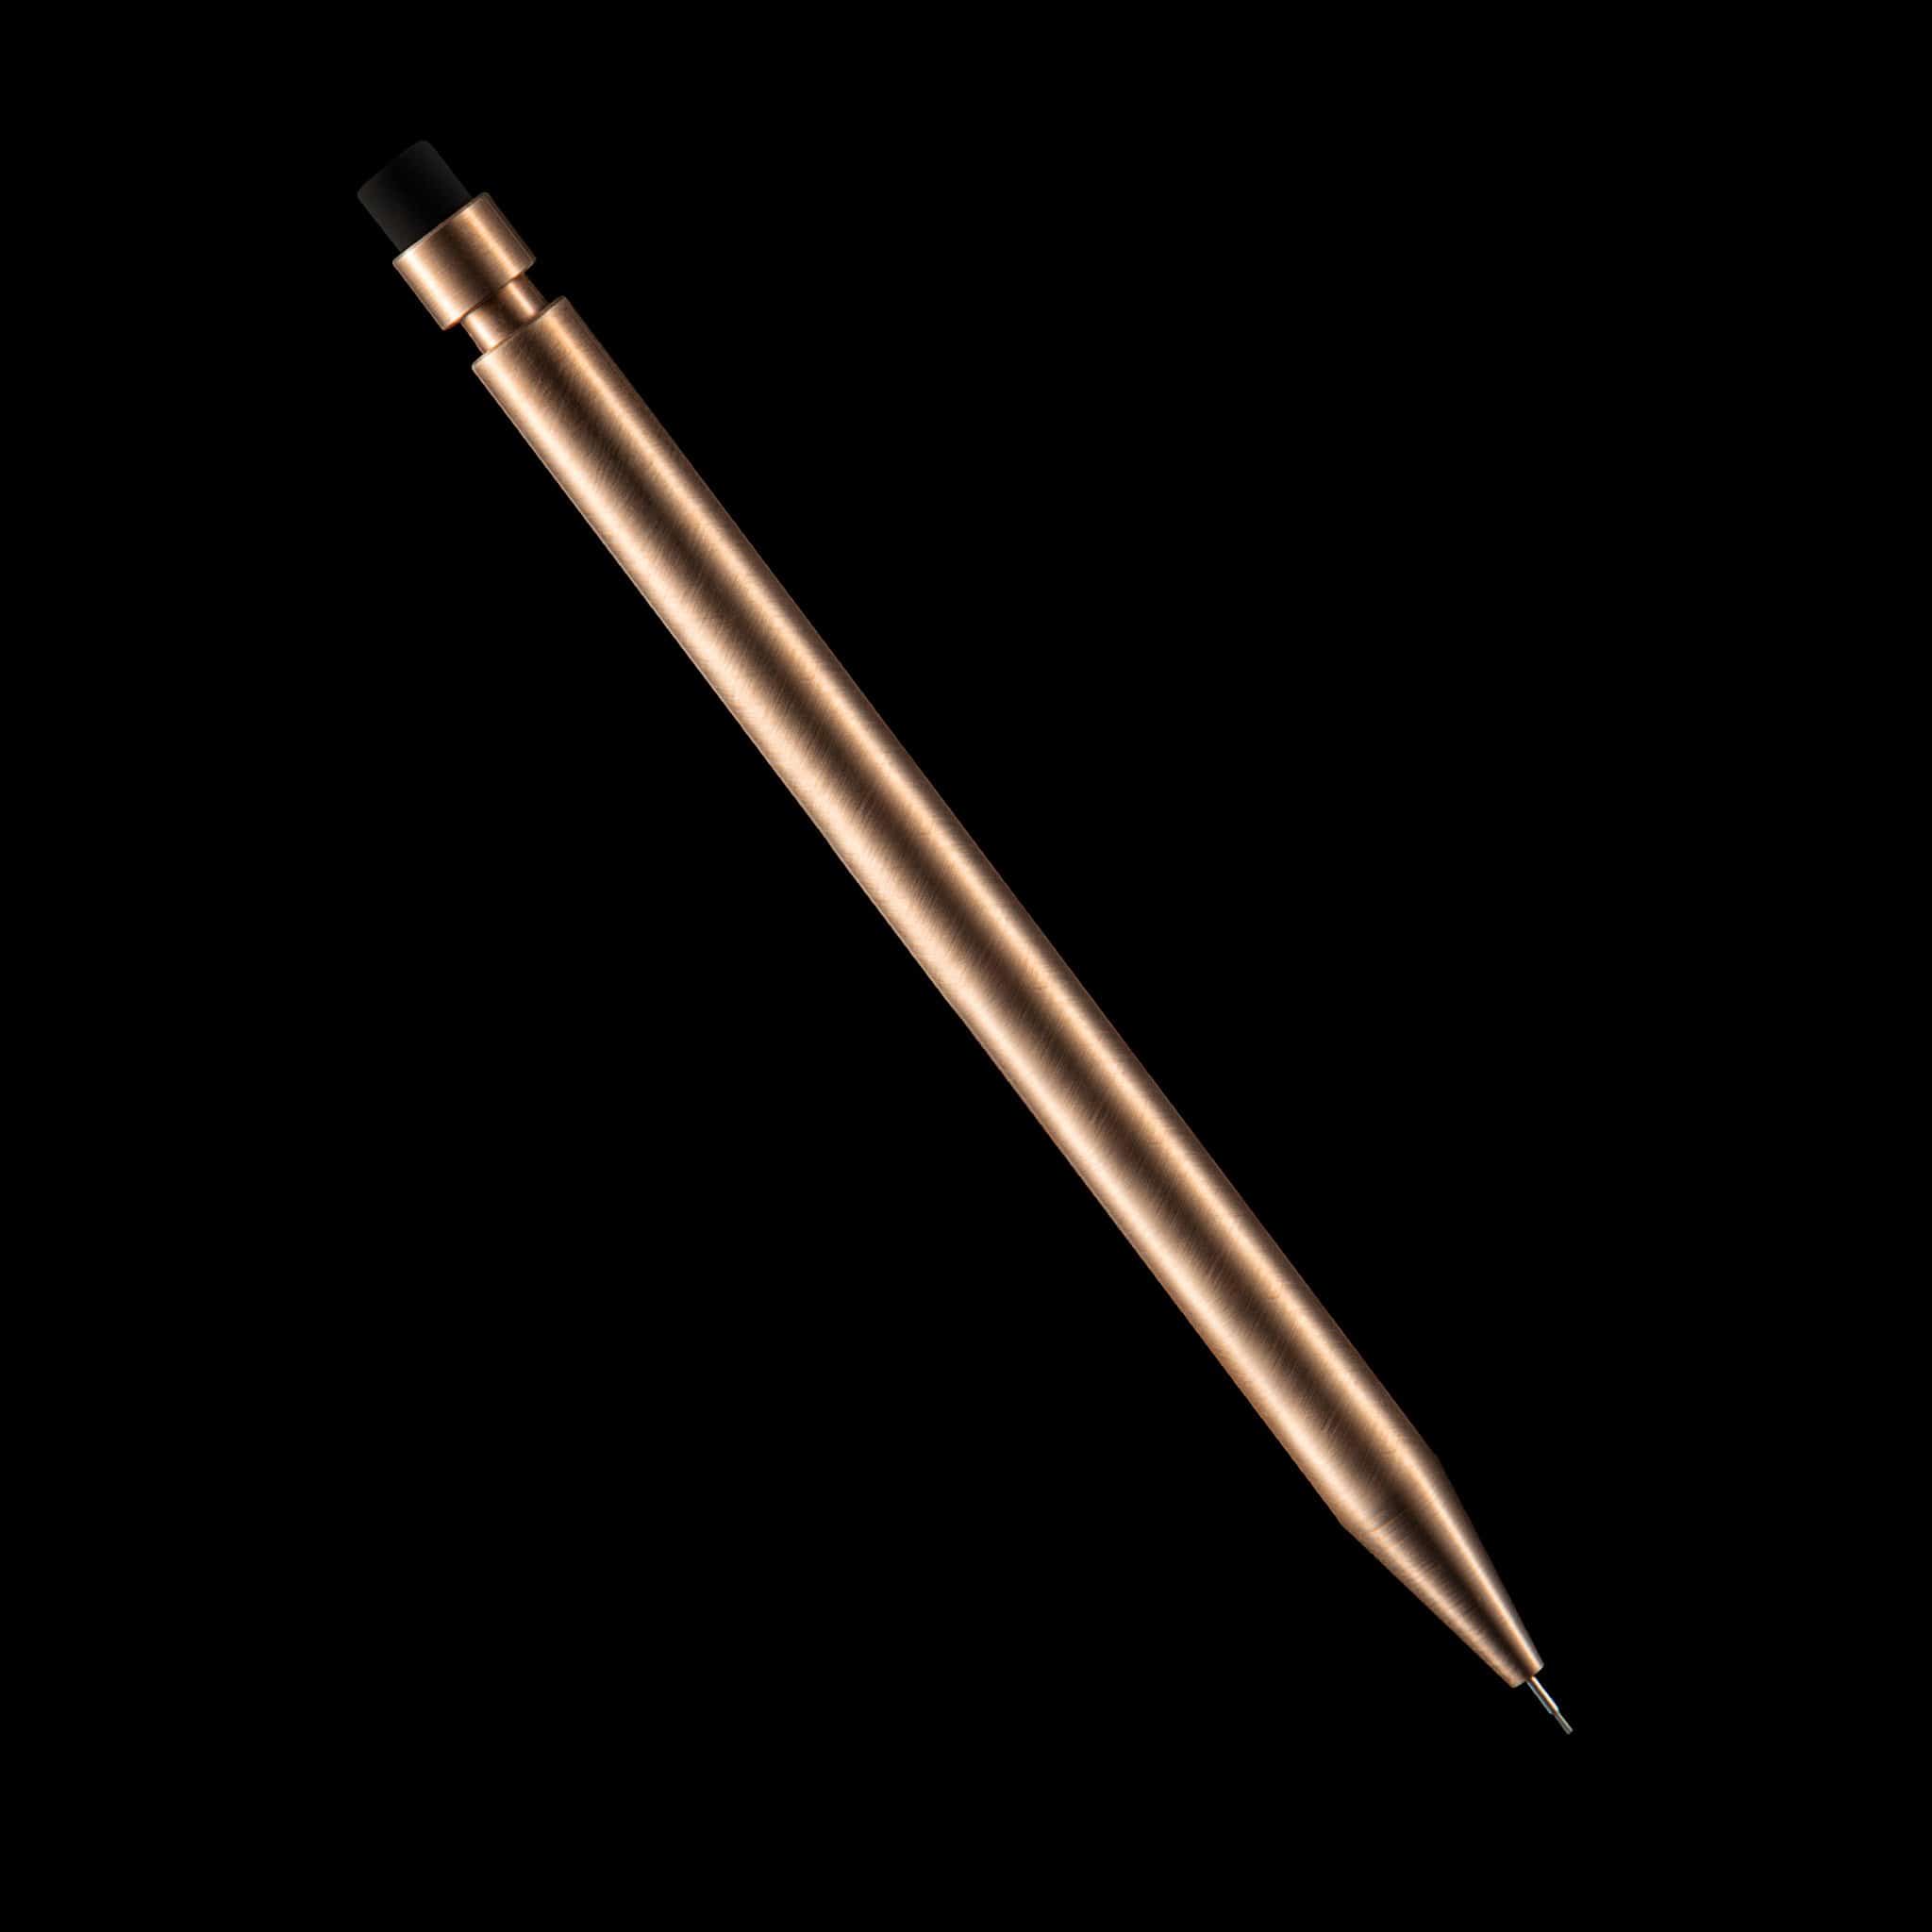 Metal pencil｜TikTok Search